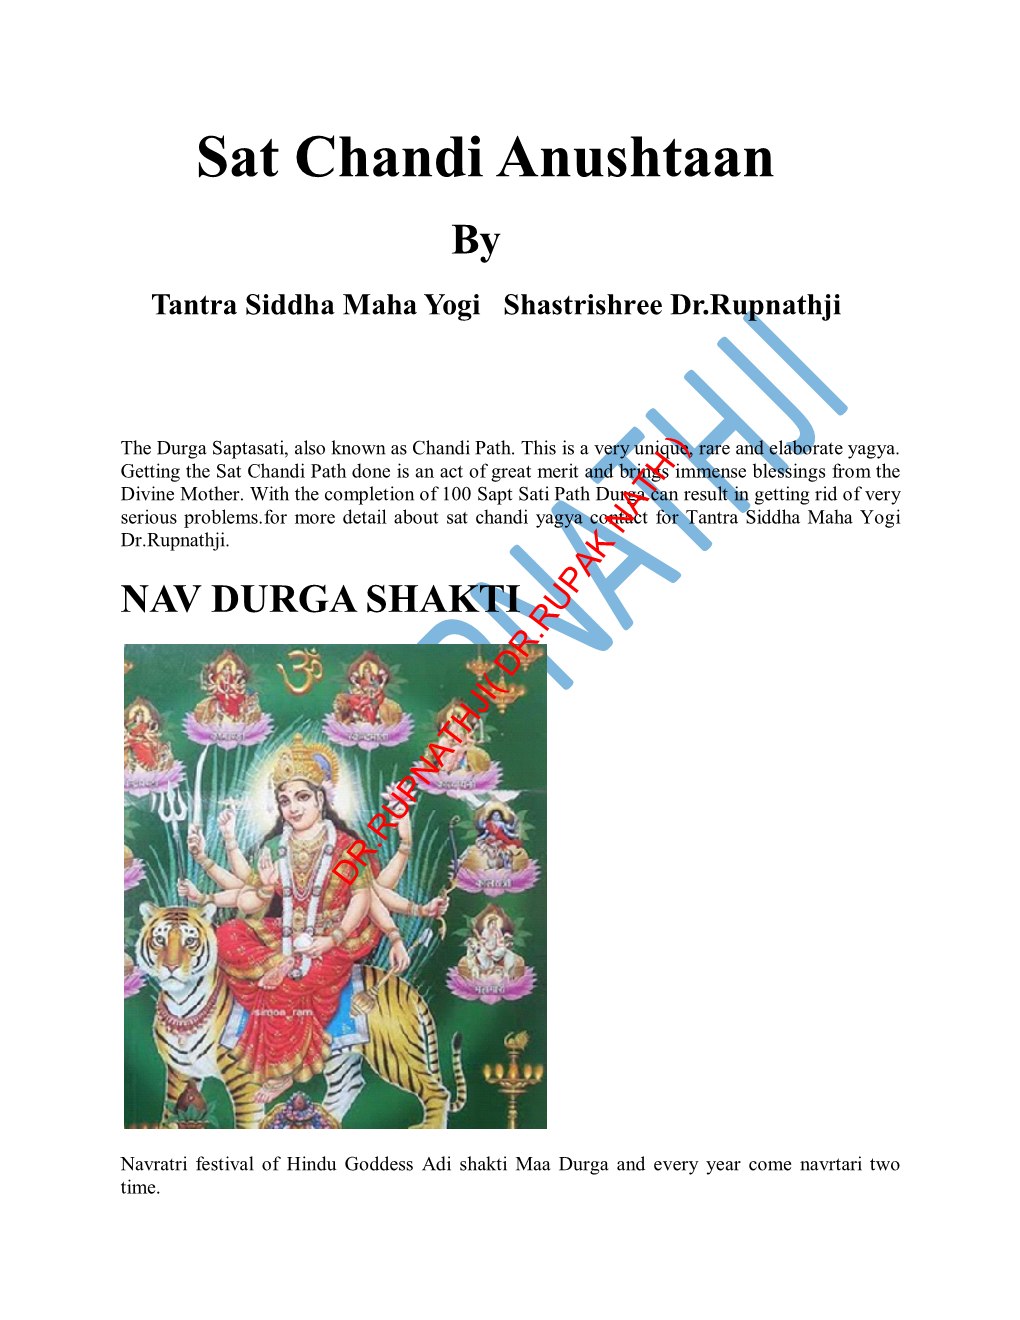 Sat Chandi Anushtaan by Tantra Siddha Maha Yogi Shastrishree Dr.Rupnathji